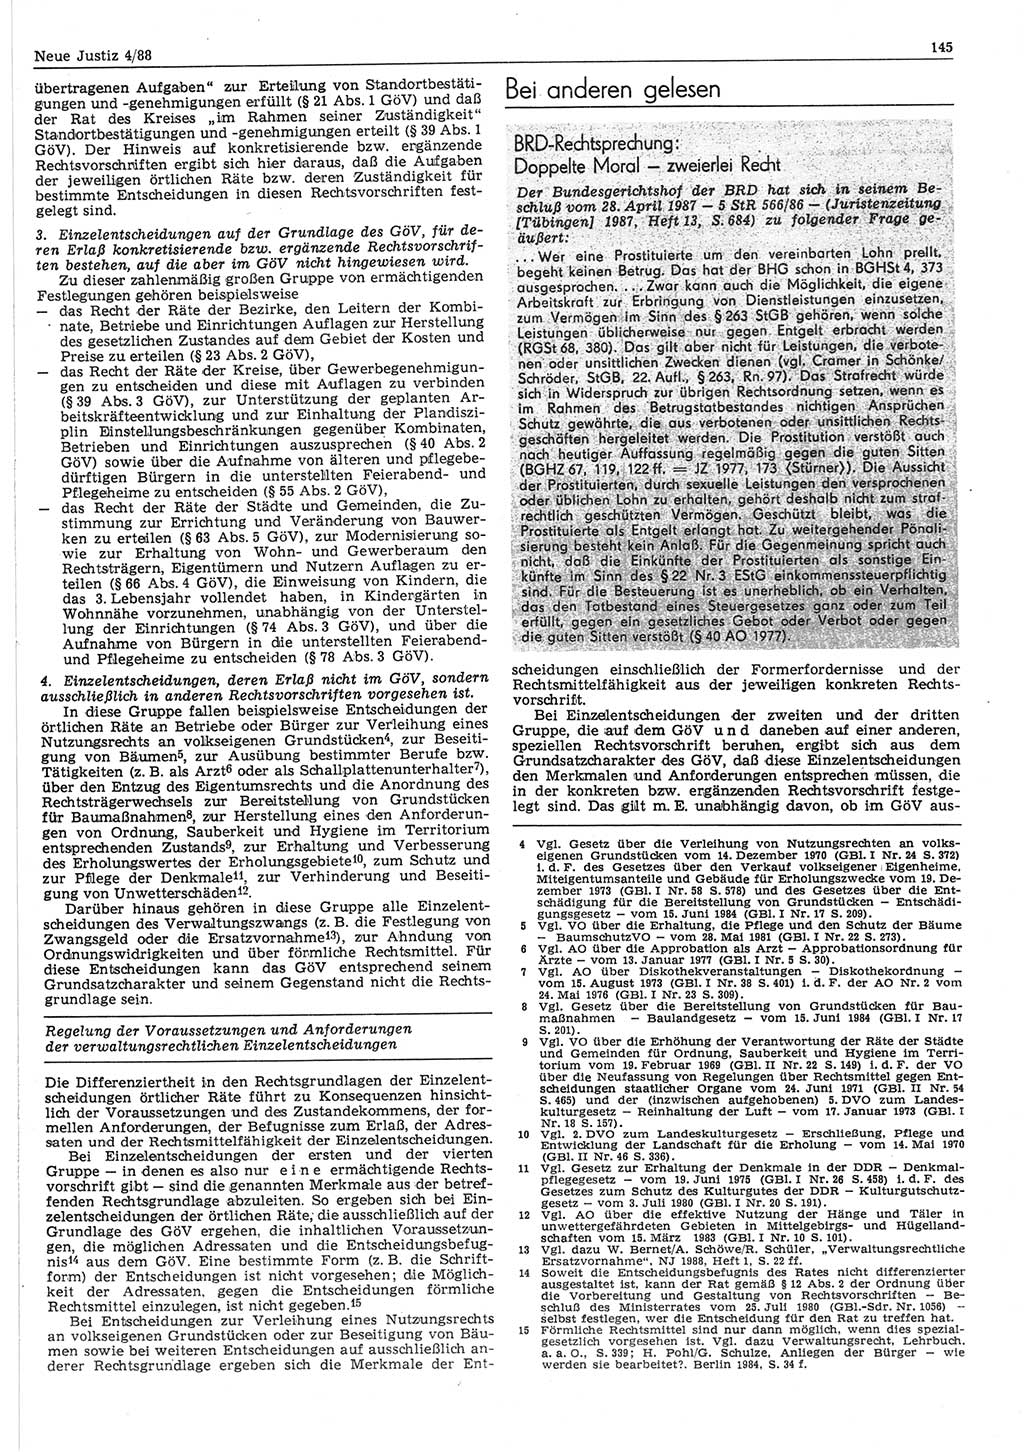 Neue Justiz (NJ), Zeitschrift für sozialistisches Recht und Gesetzlichkeit [Deutsche Demokratische Republik (DDR)], 42. Jahrgang 1988, Seite 145 (NJ DDR 1988, S. 145)